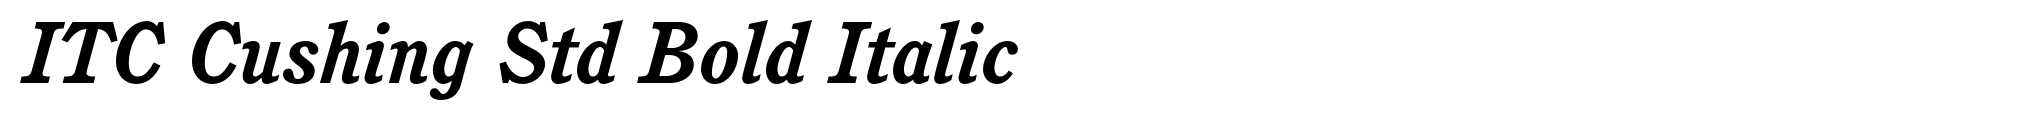 ITC Cushing Std Bold Italic image